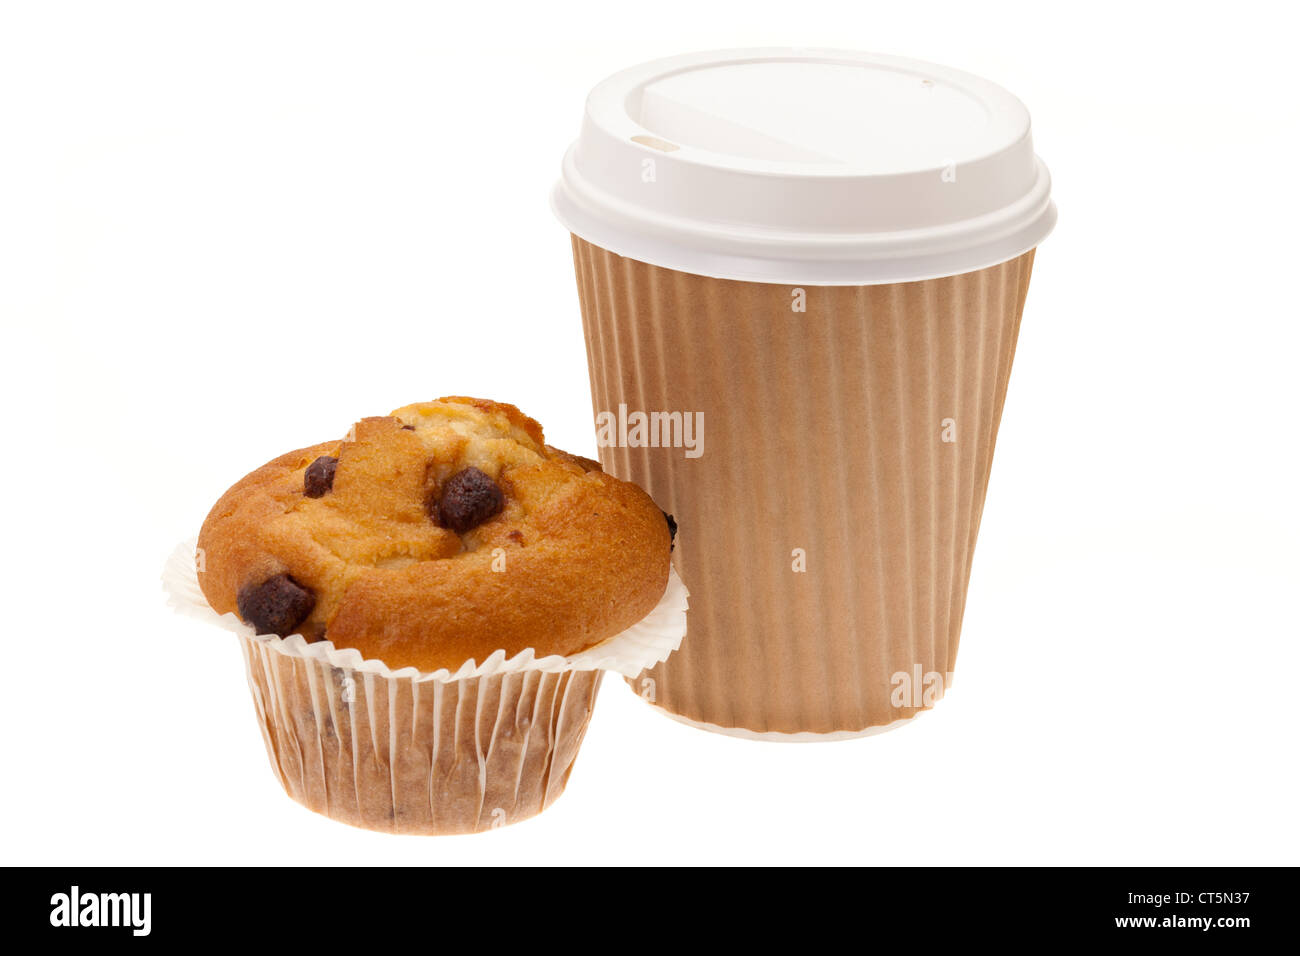 A estrarre la prima colazione consiste di un chip di cioccolato muffin e caffè in una tazza monouso - studio shot con uno sfondo bianco Foto Stock